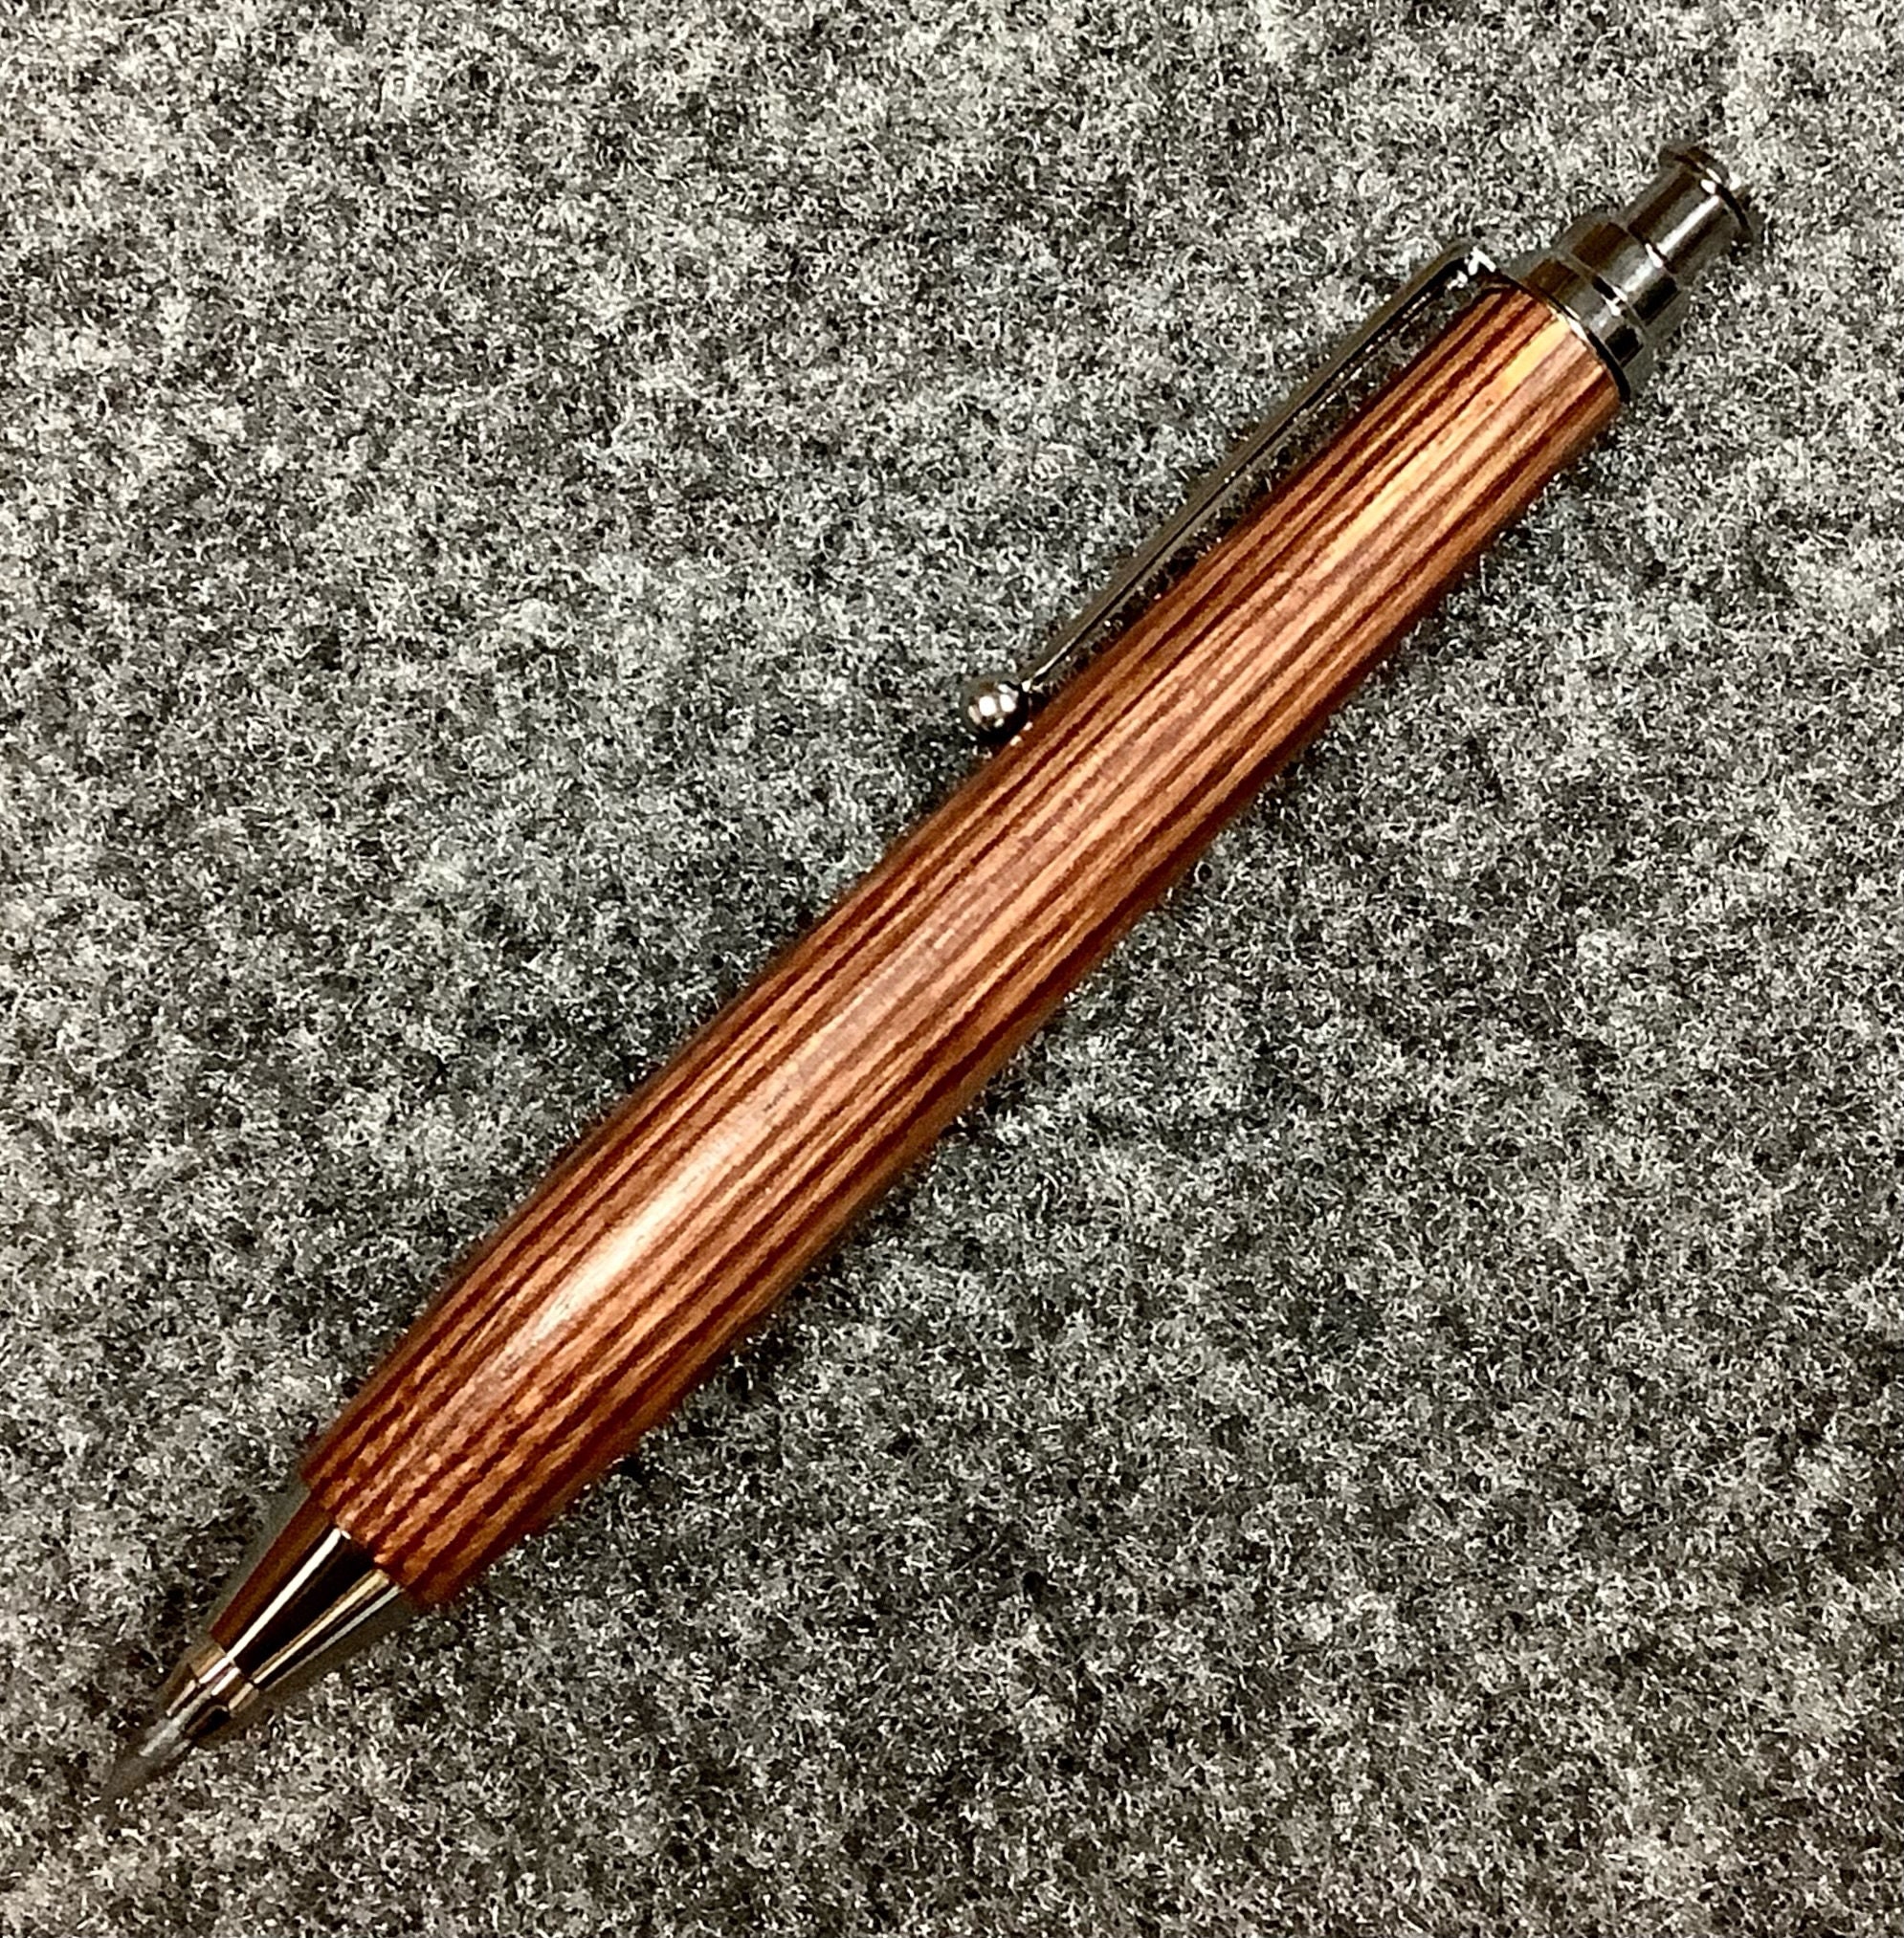 Artisan 3 mm Sketch Pencil Kit, Pen Making